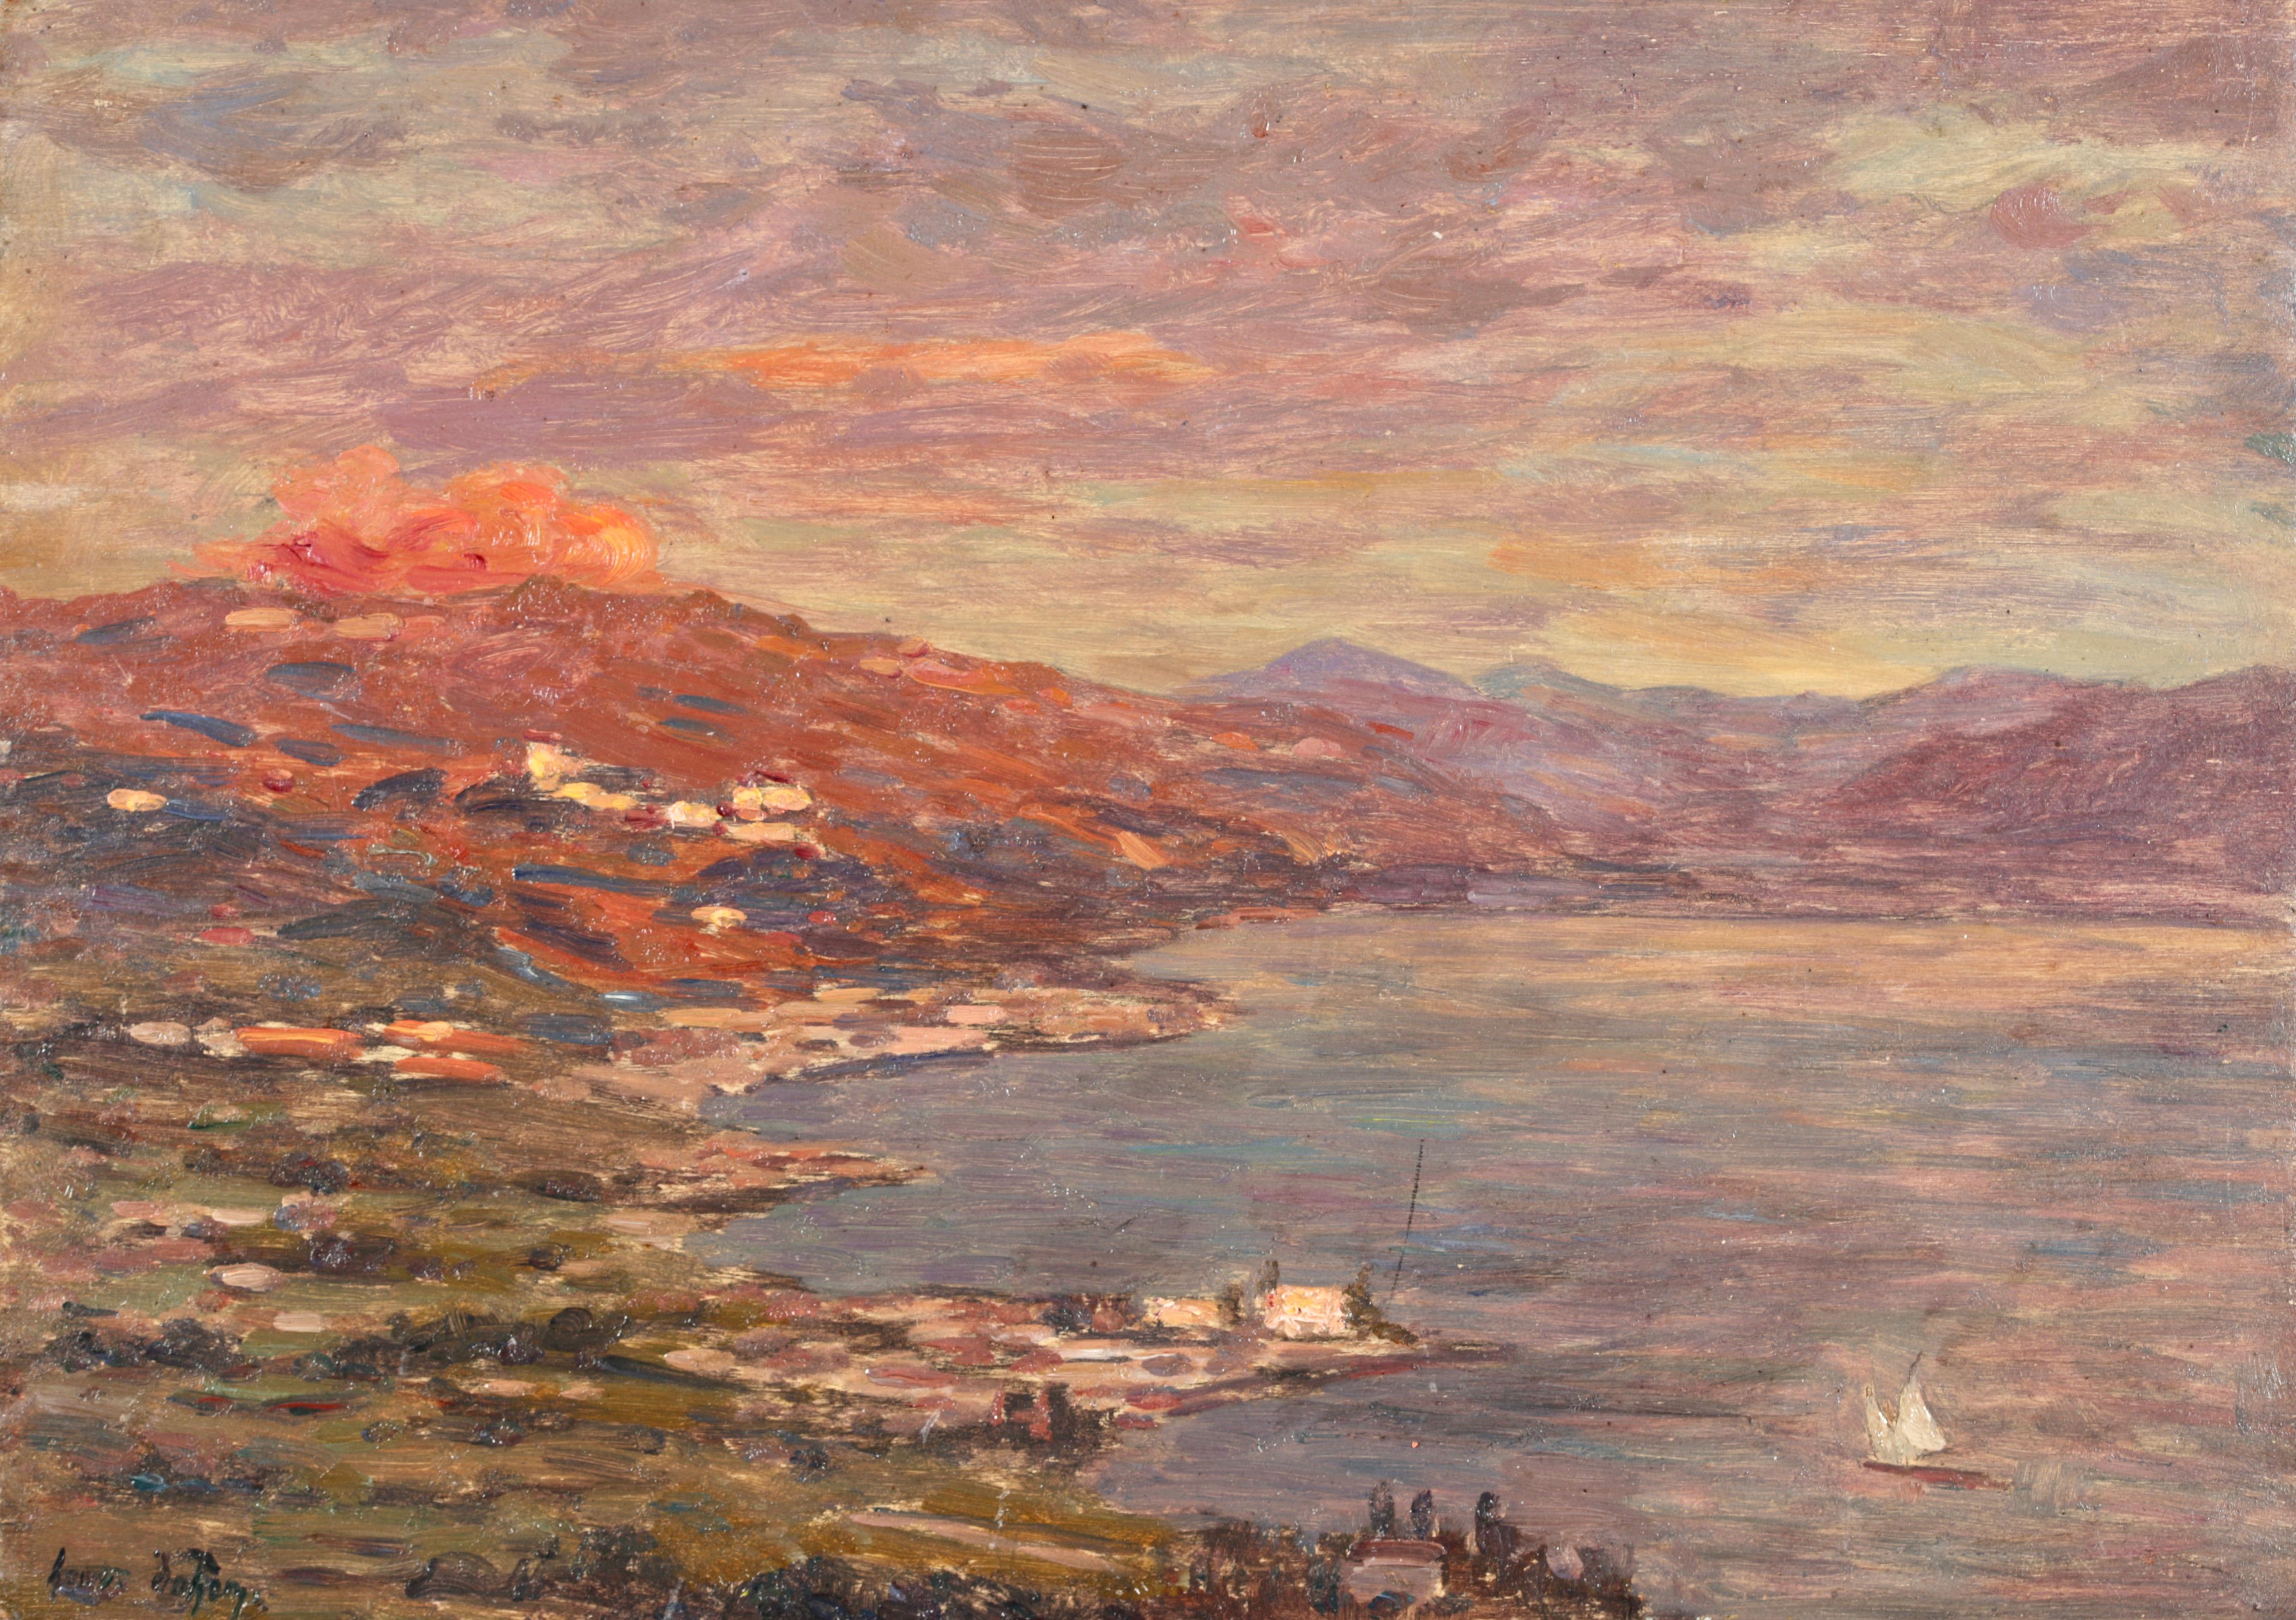 Signiert und datiert impressionistische Öl auf Panel Landschaft von Französisch Maler Henri Duhem. Das Werk zeigt den Blick auf ein Segelboot auf einem See an einem Sommertag mit den Bergen dahinter. Das ruhige Wasser ist in Blau- und Violetttönen